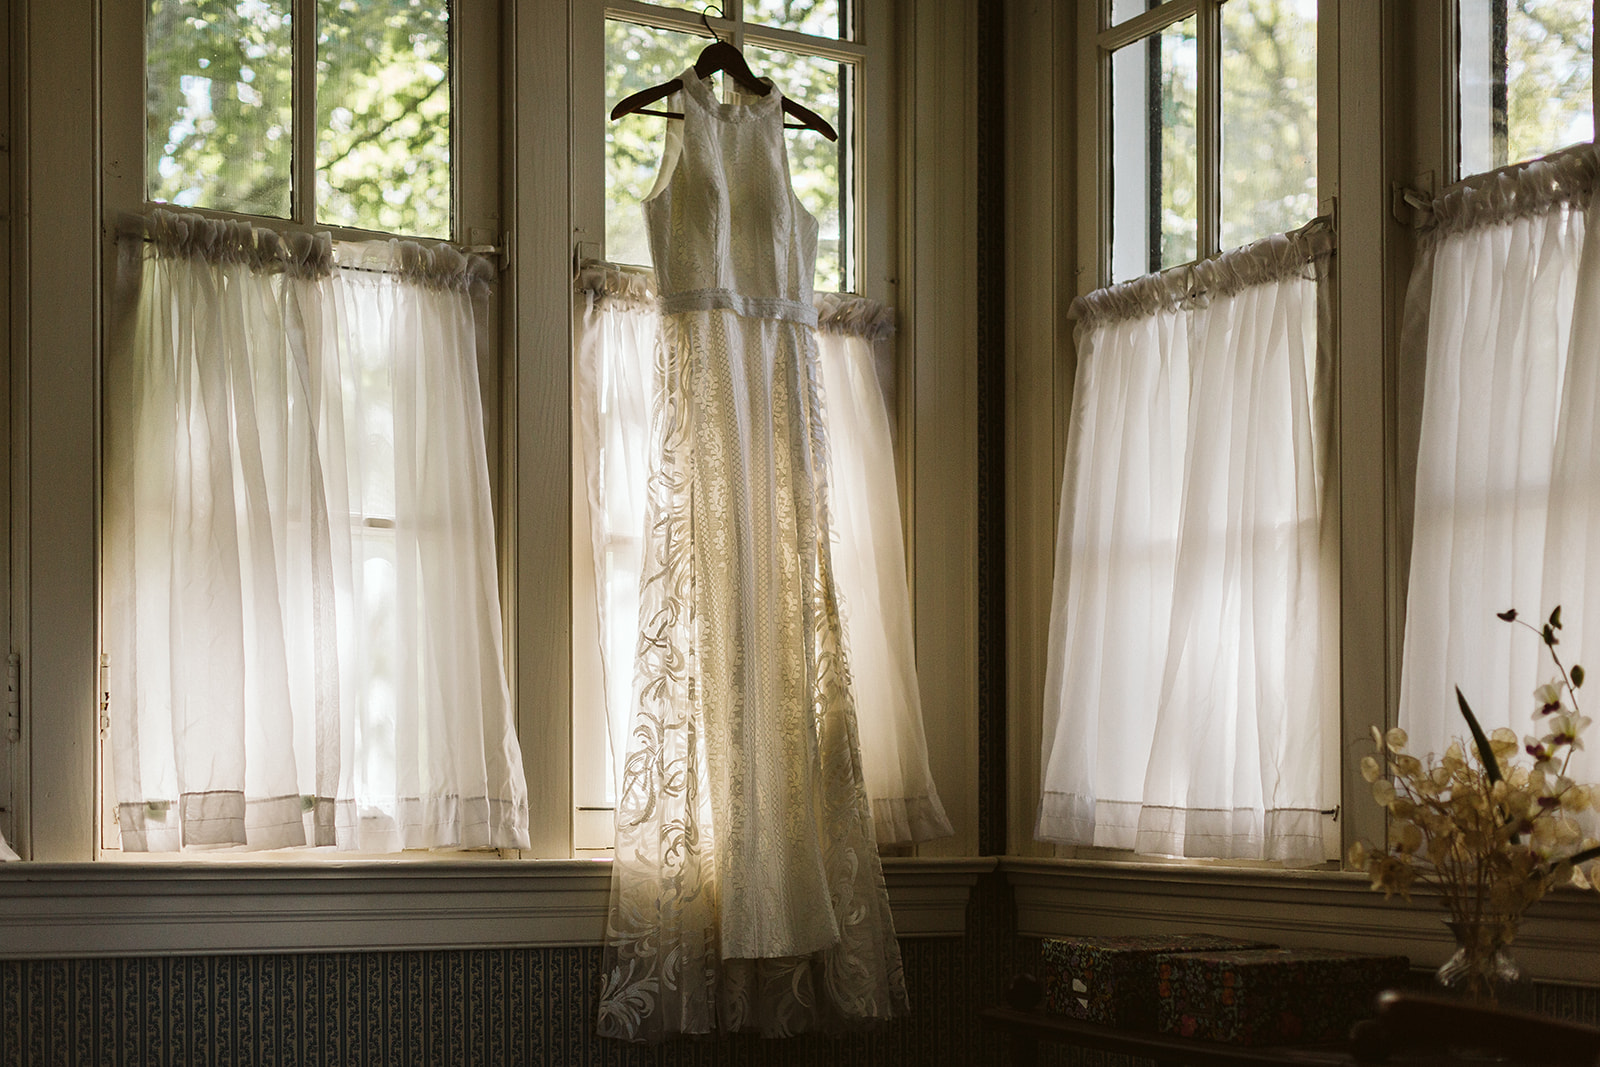 A wedding dress hangs in a sunny window.